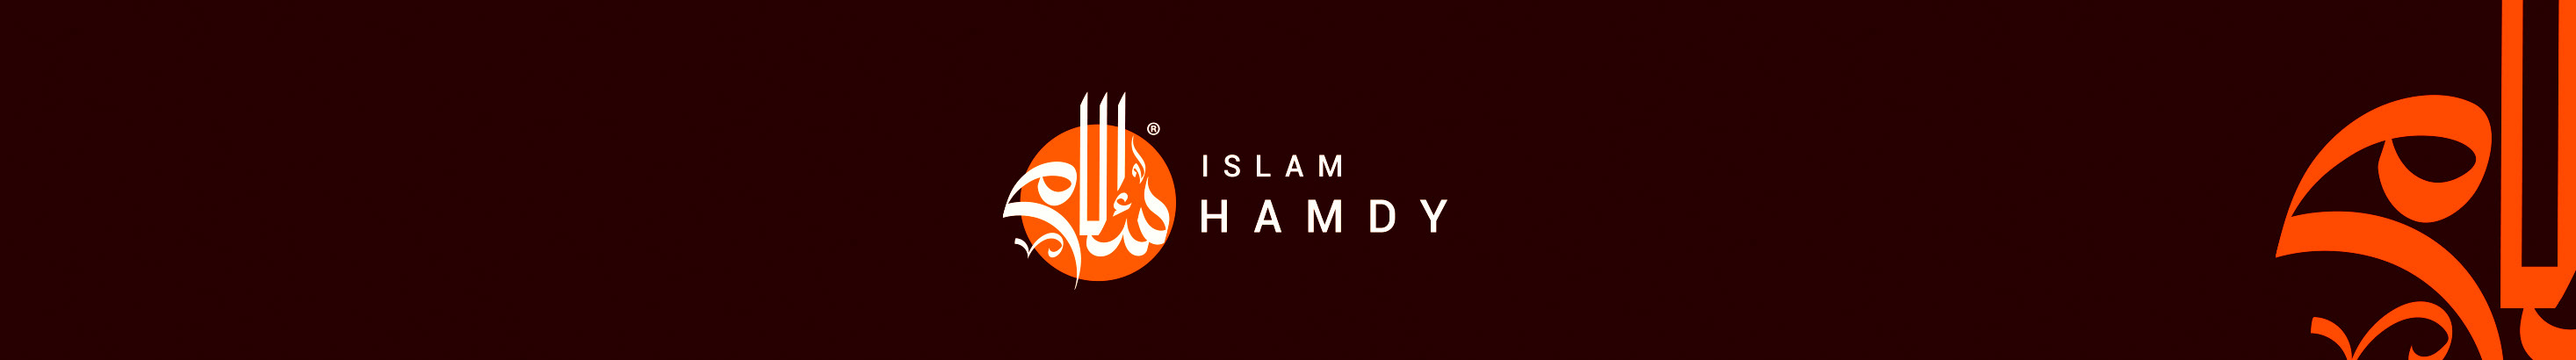 Islam Hamdy のプロファイルバナー